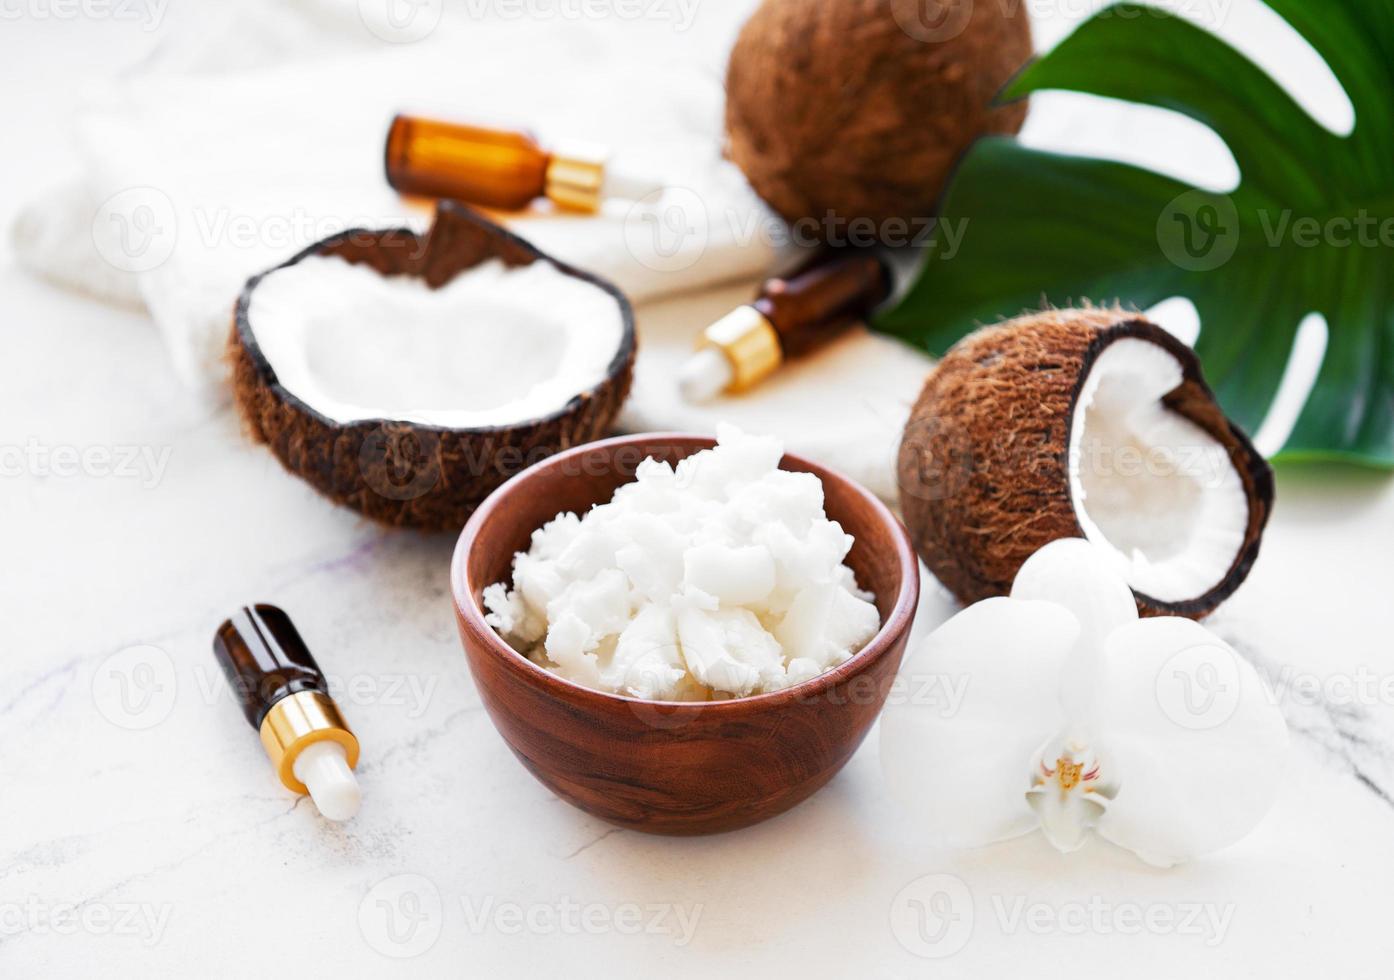 ingredientes naturais de coco para spa foto